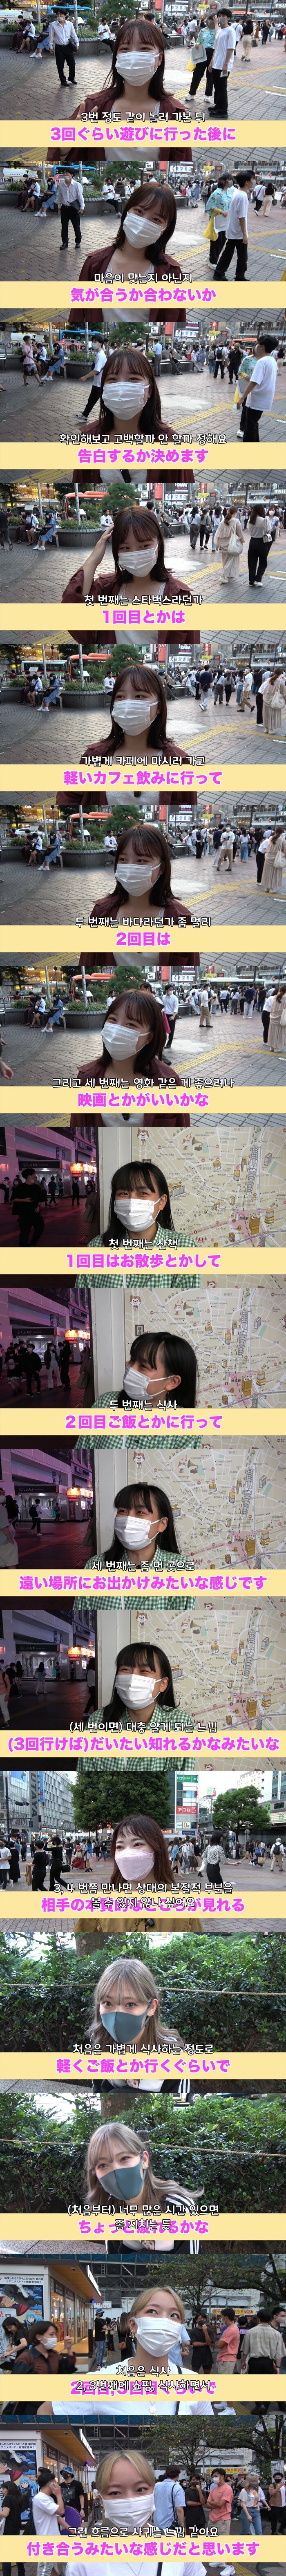 일본 여성들이 생각하는 '사귀게 되는 흐름'